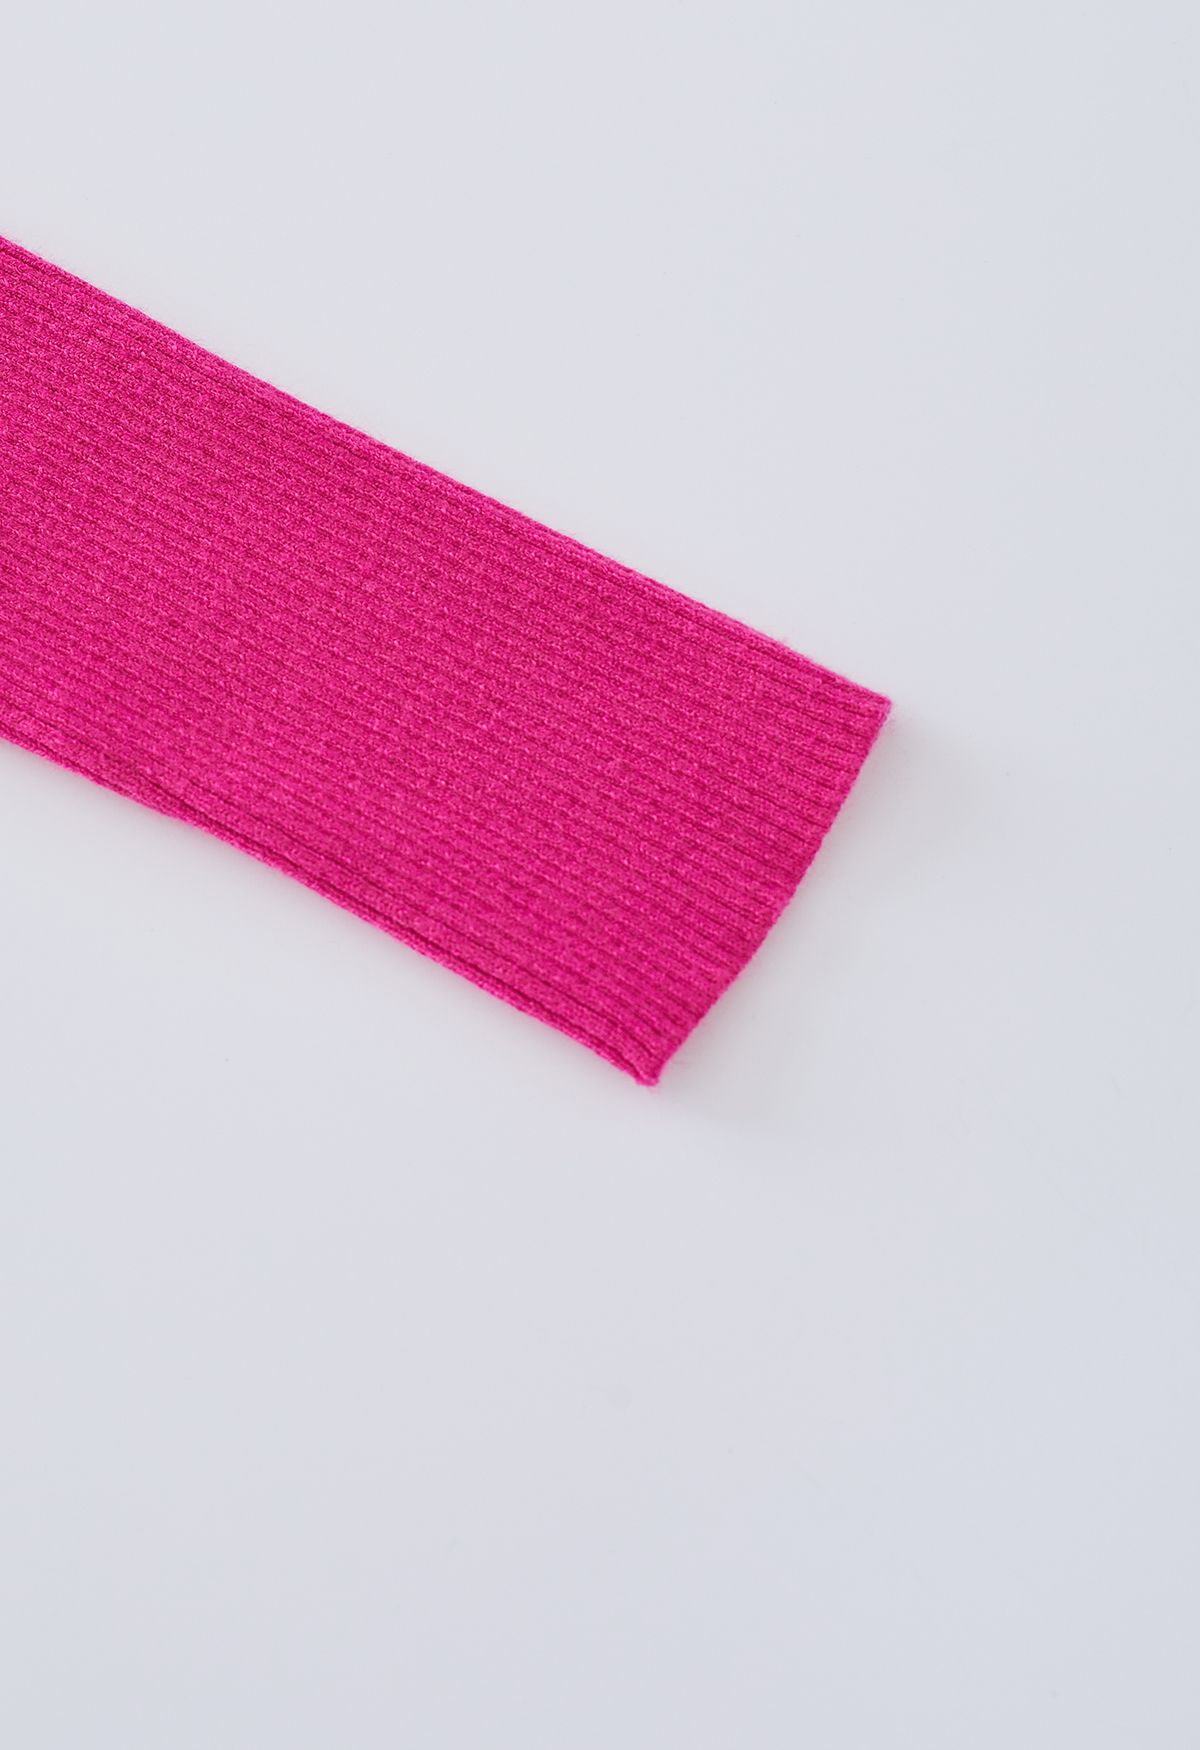 Conjunto de top corto de punto y falda larga con abertura alta en rosa intenso